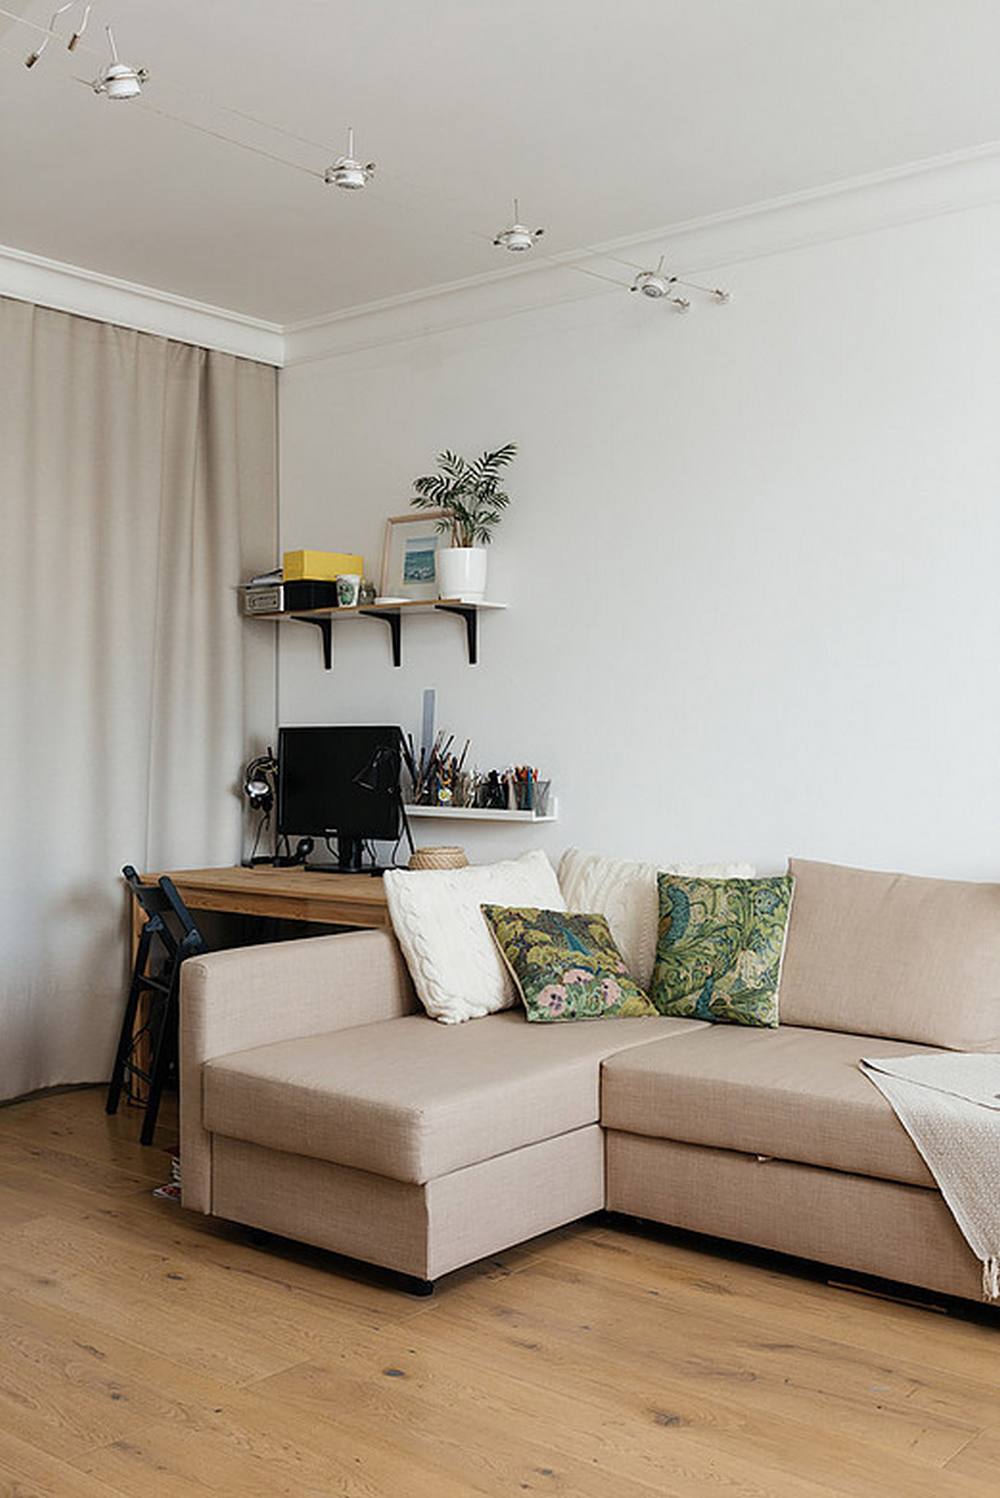 Toàn bộ bức tường trong căn hộ được sơn màu trắng tươi mới. Phòng khách thiết kế đơn giản với ghế sofa góc với gam màu be trang nhã. Kiểu sofa chữ L này cũng giúp 'phân chia ranh giới' giữa phòng khách và góc làm việc một cách hiệu quả.